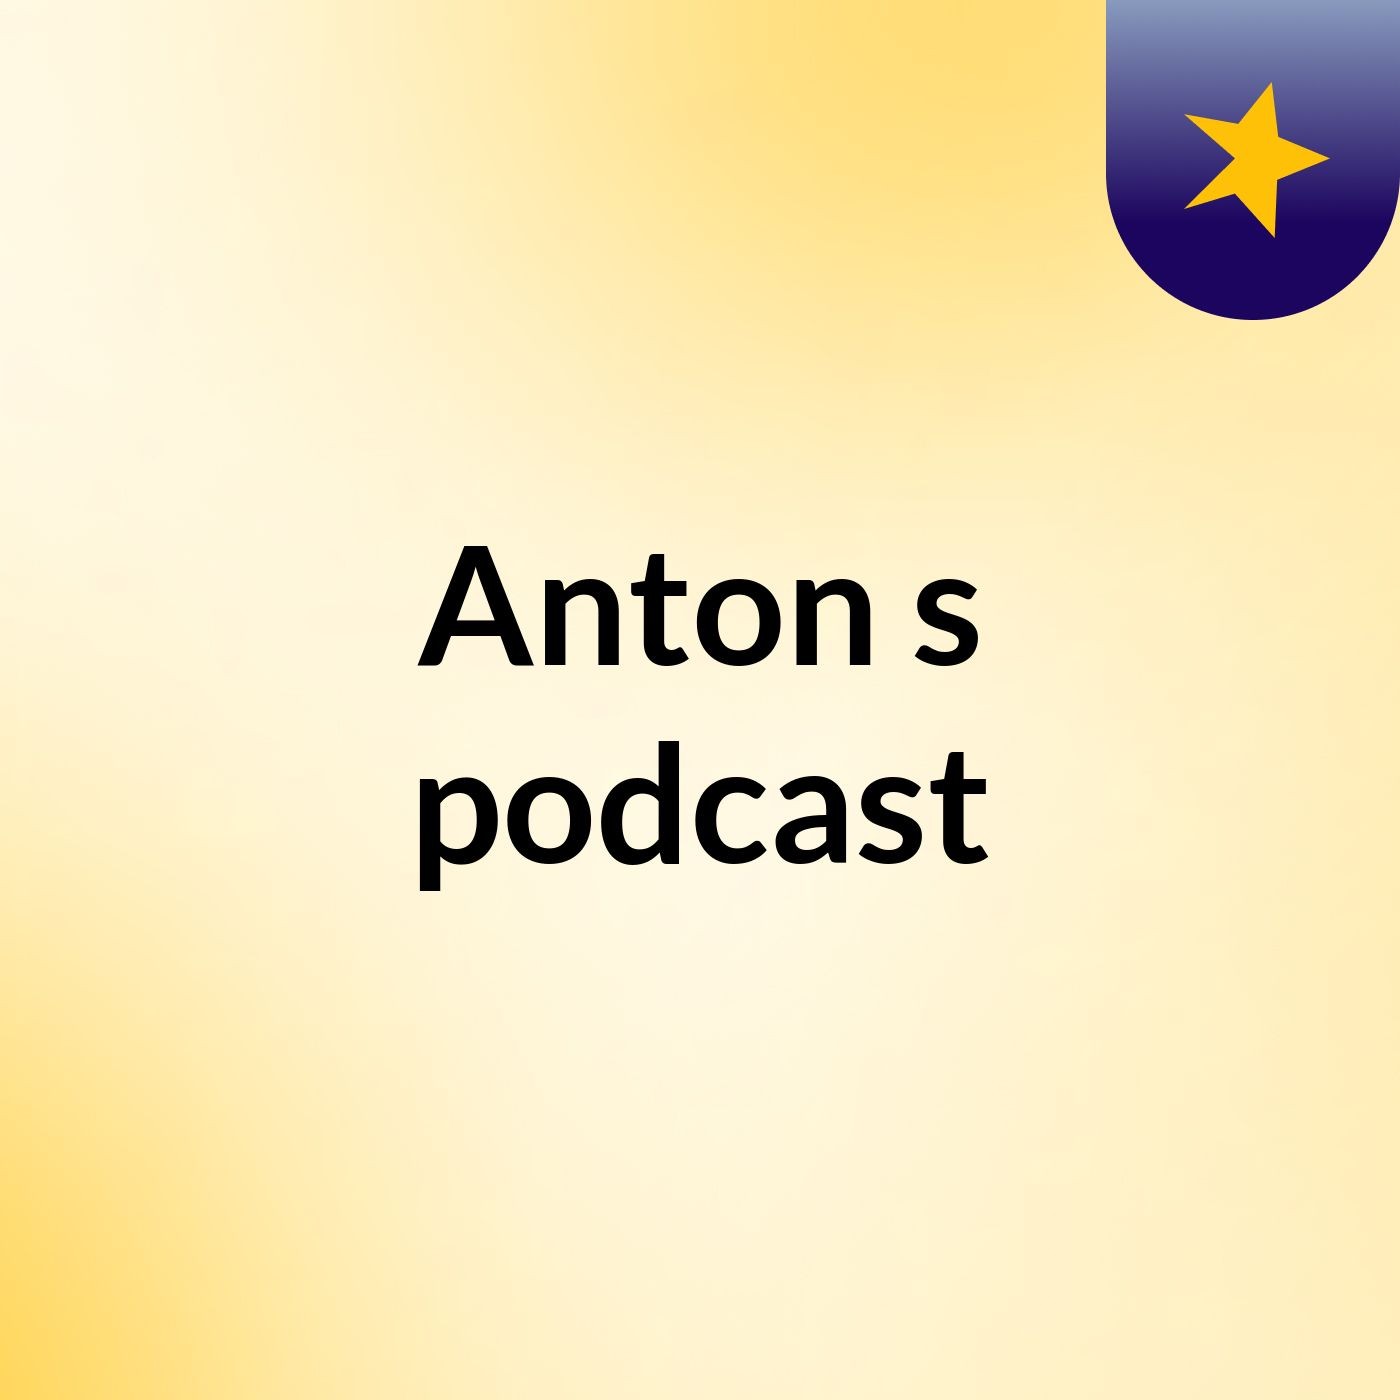 Episode 9 - Anton's podcast